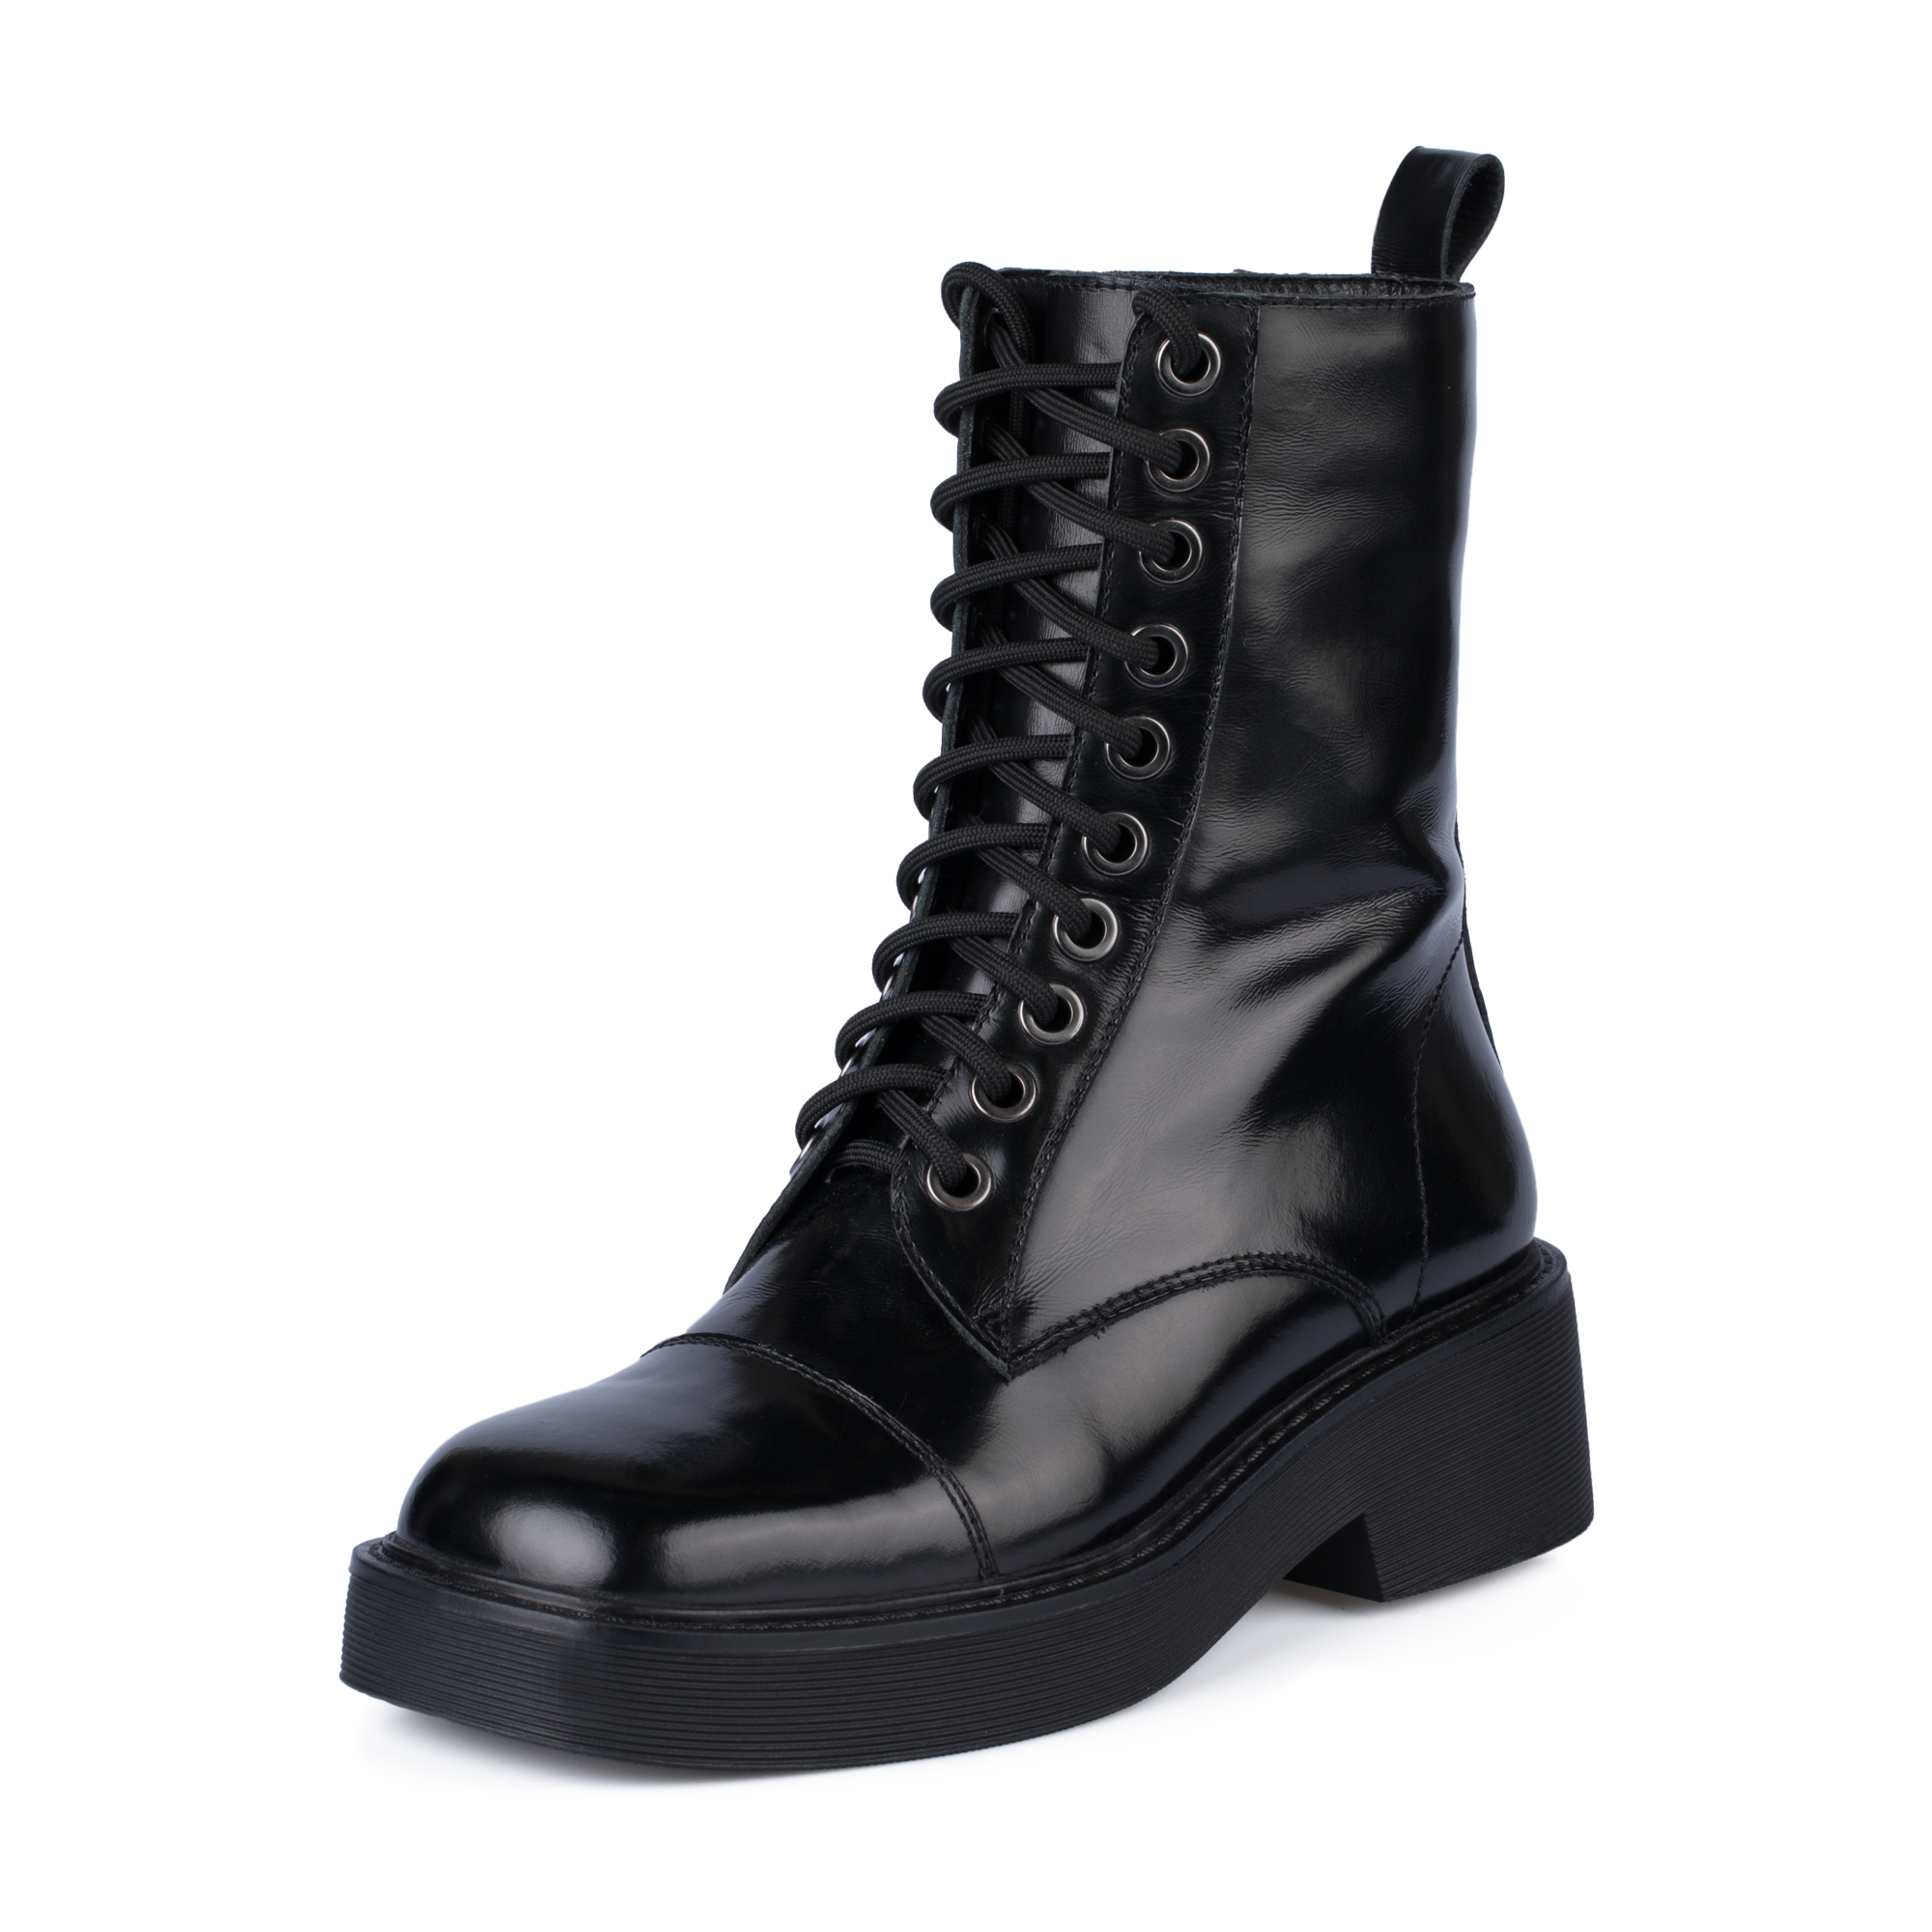 Ботинки Thomas Munz 126-400A-2102, цвет черный, размер 36 - фото 2